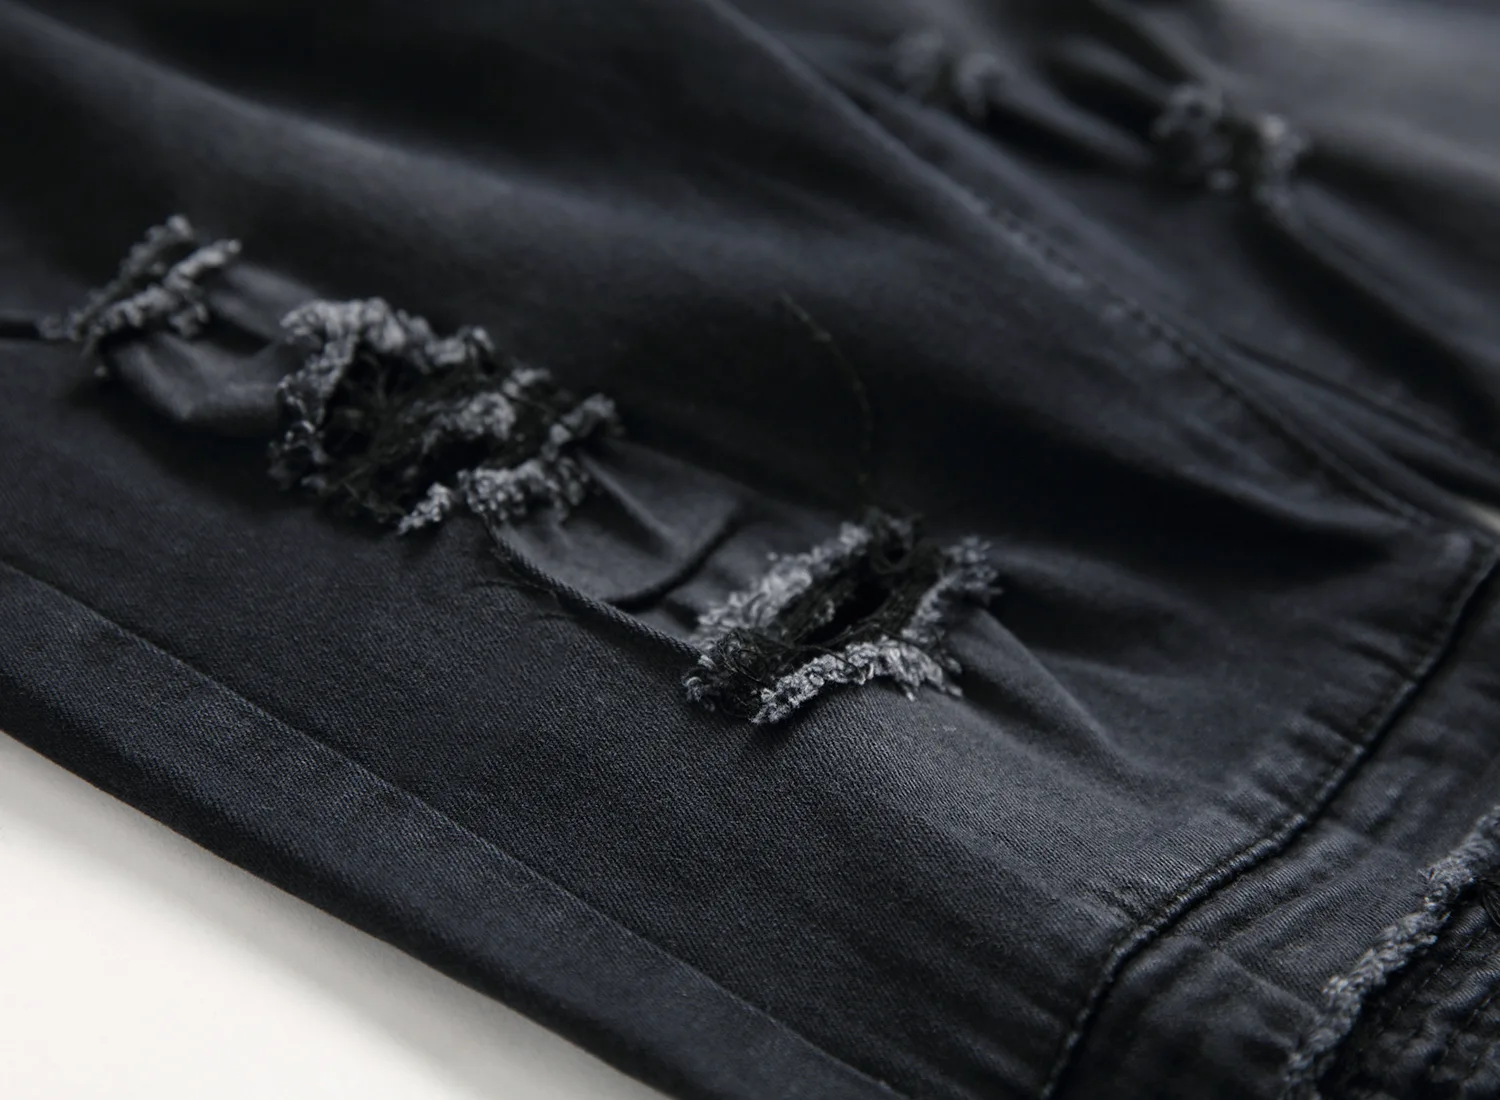 HMILY Для мужчин отверстие колена байкерские обтягивающие джинсы модные Повседневное дизайнерские брюки Марка проблемных Уничтожено